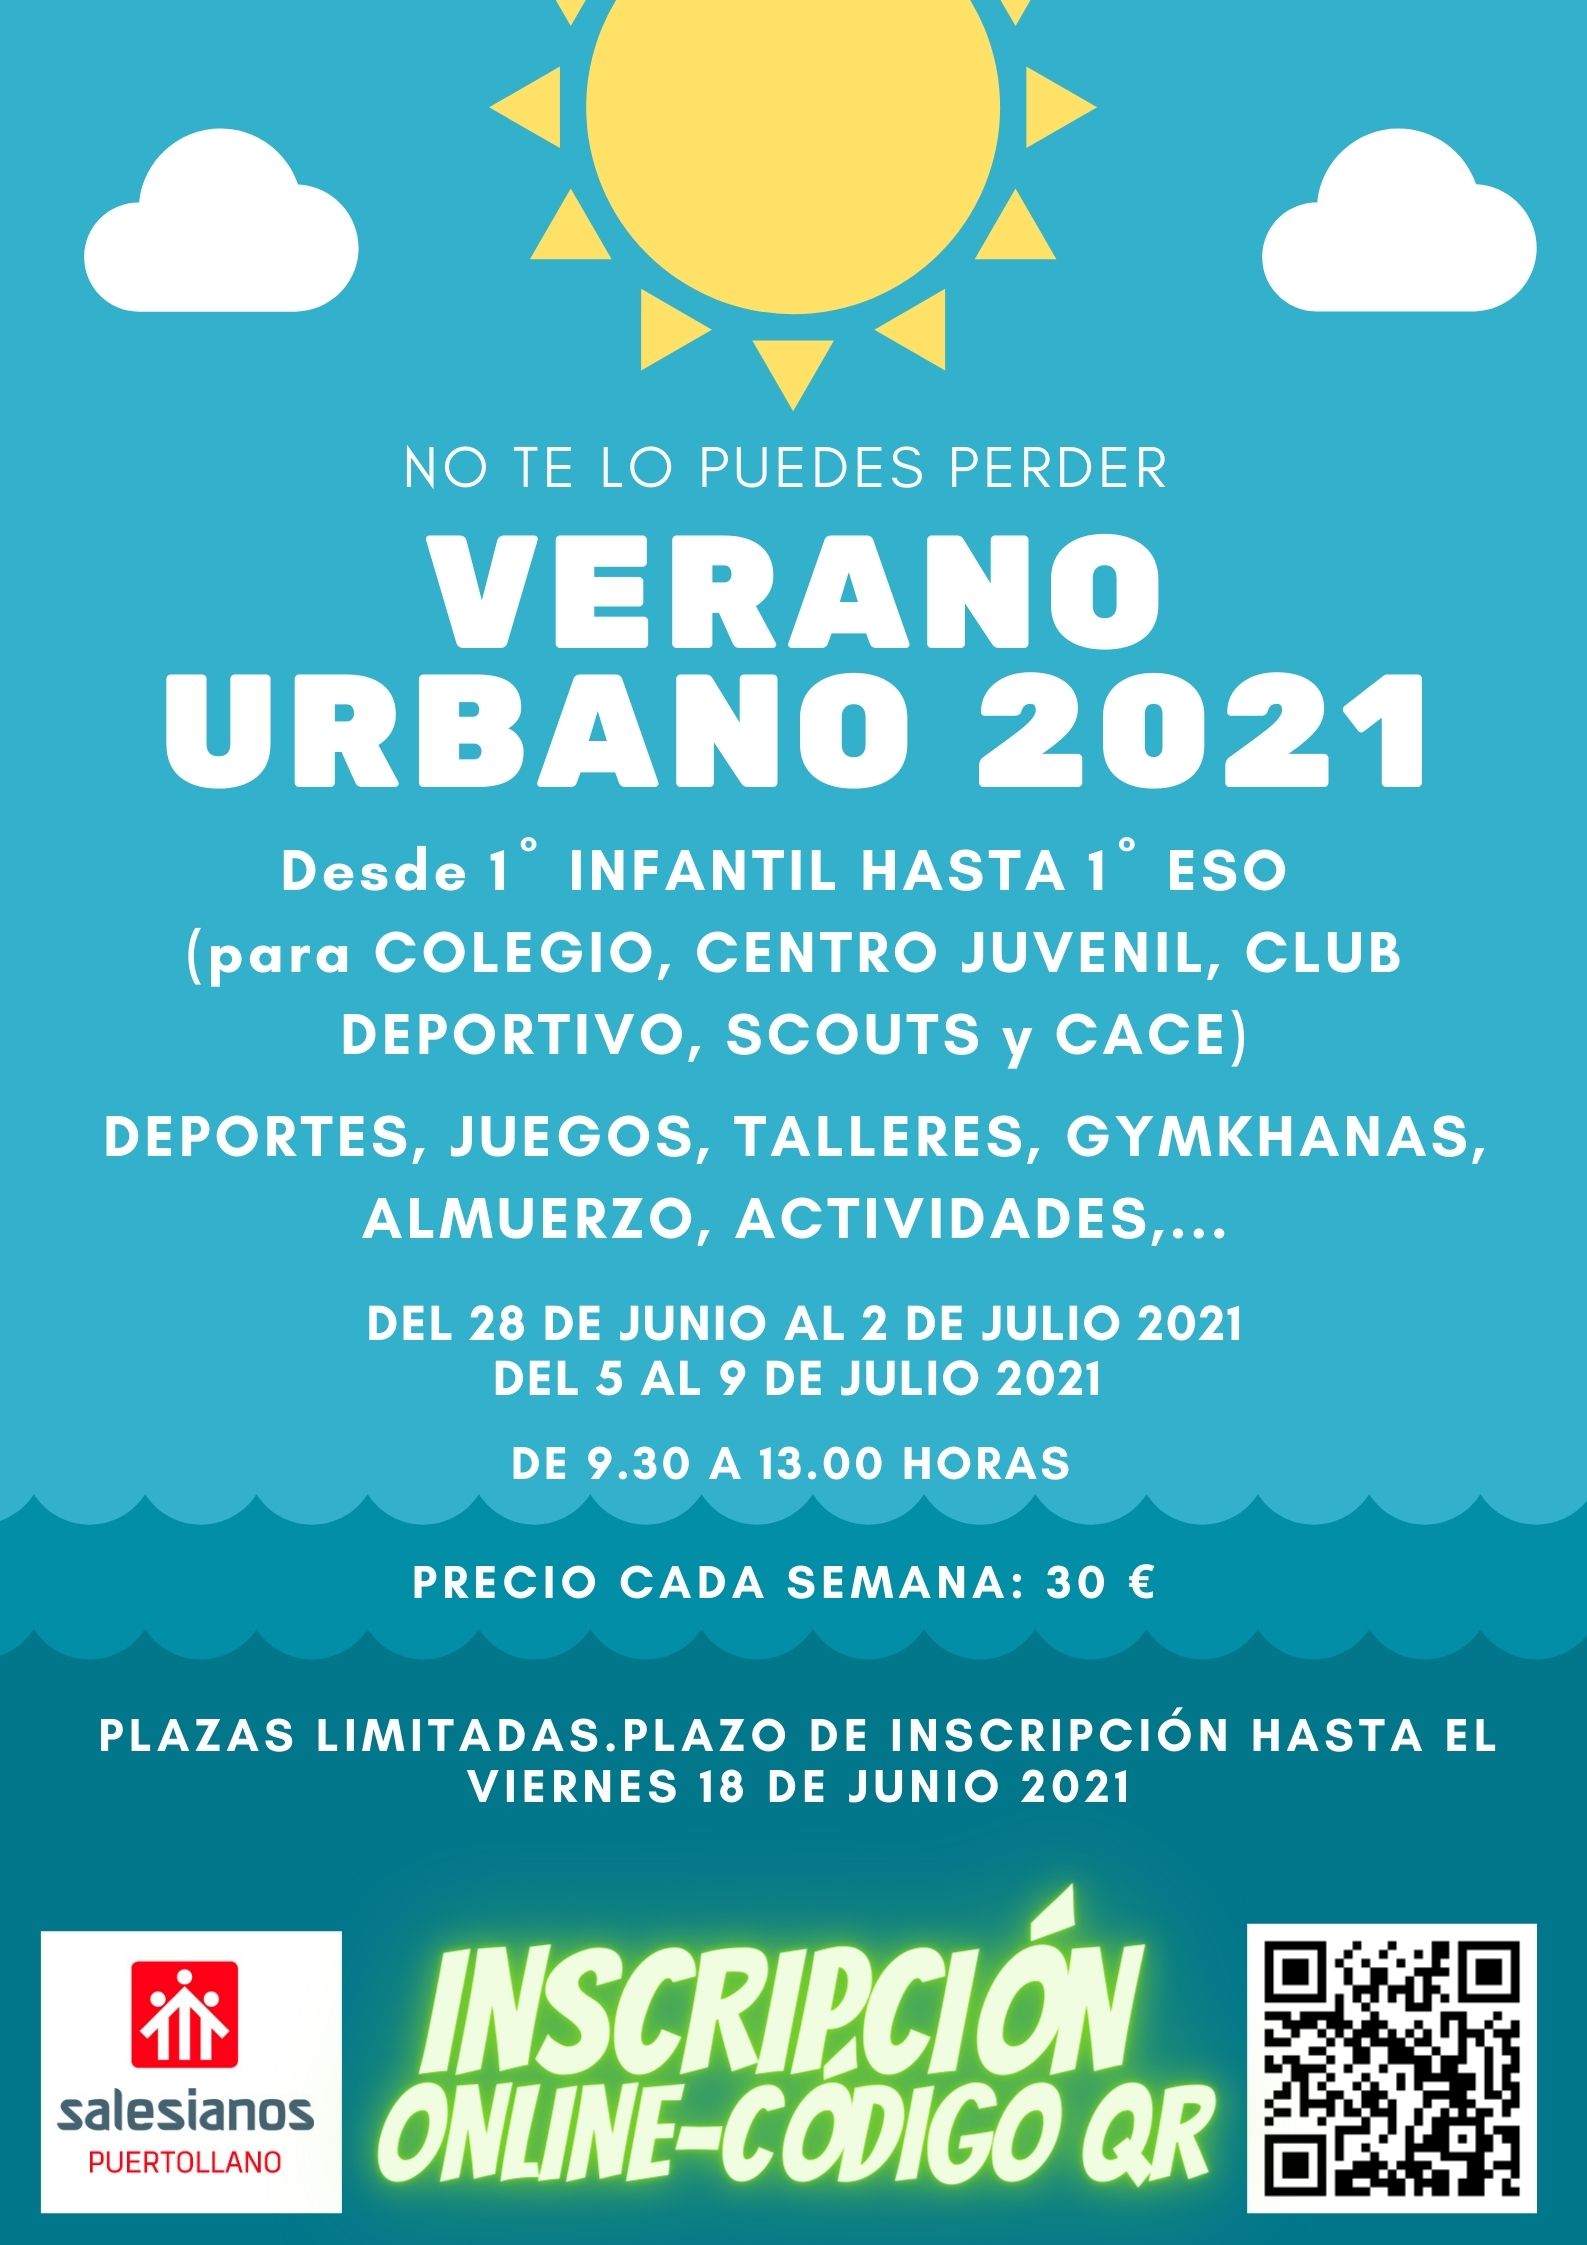 Verano urbano 2021